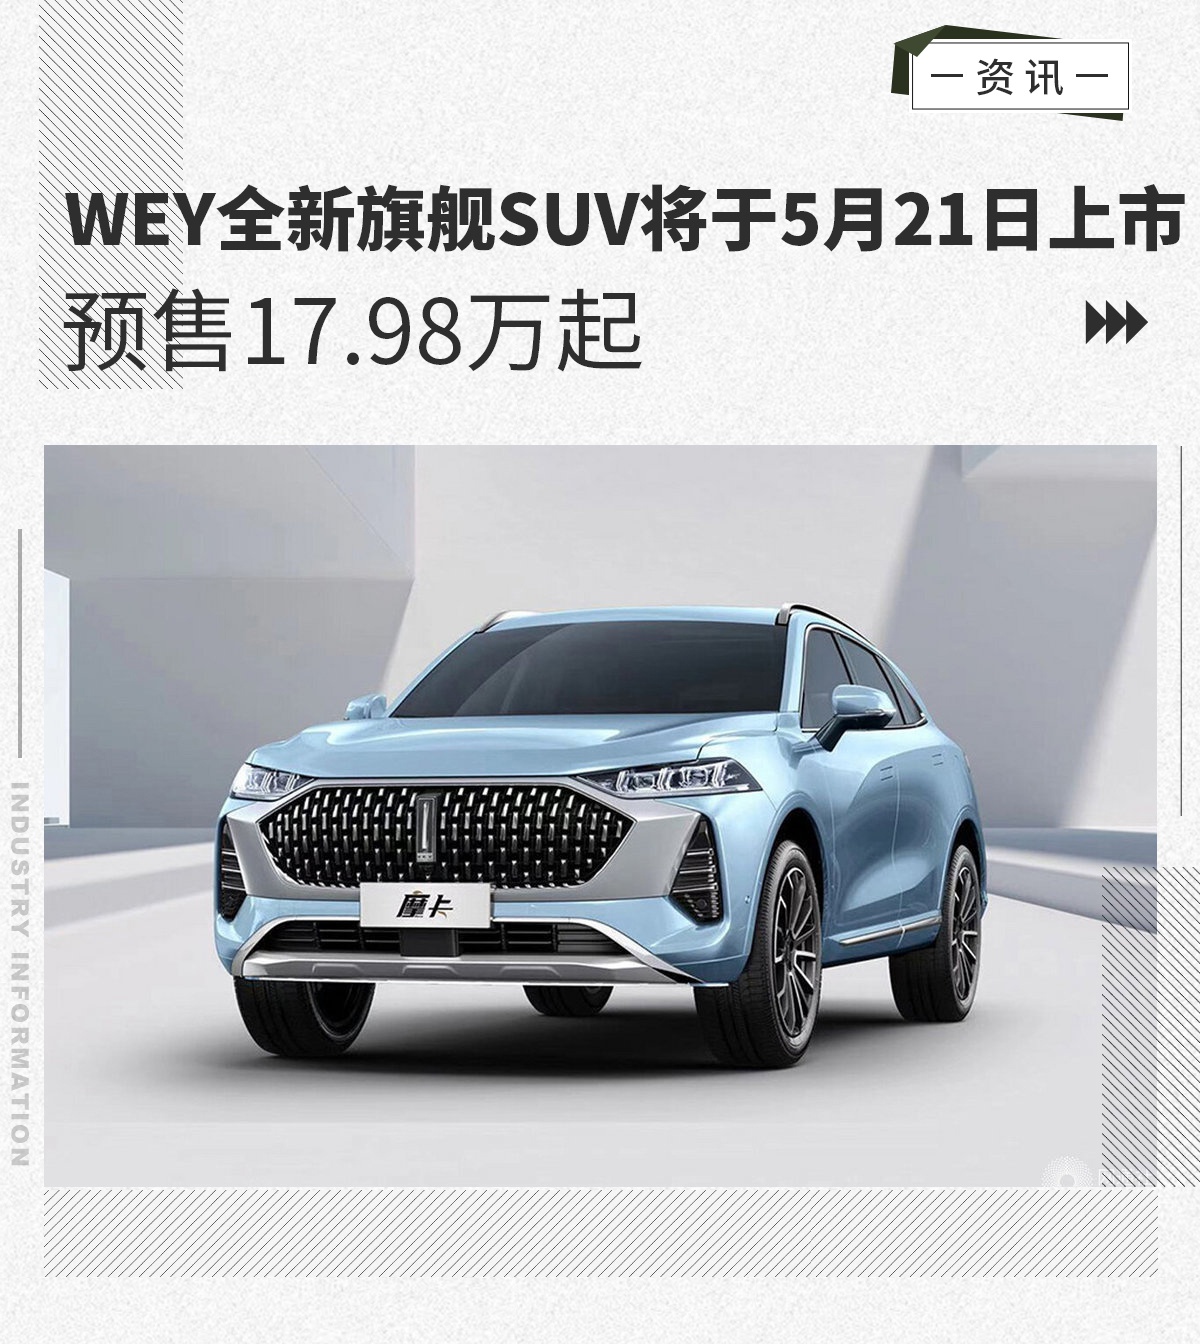 5月21日WEY全新旗舰SUV将上市 预售17.98万起